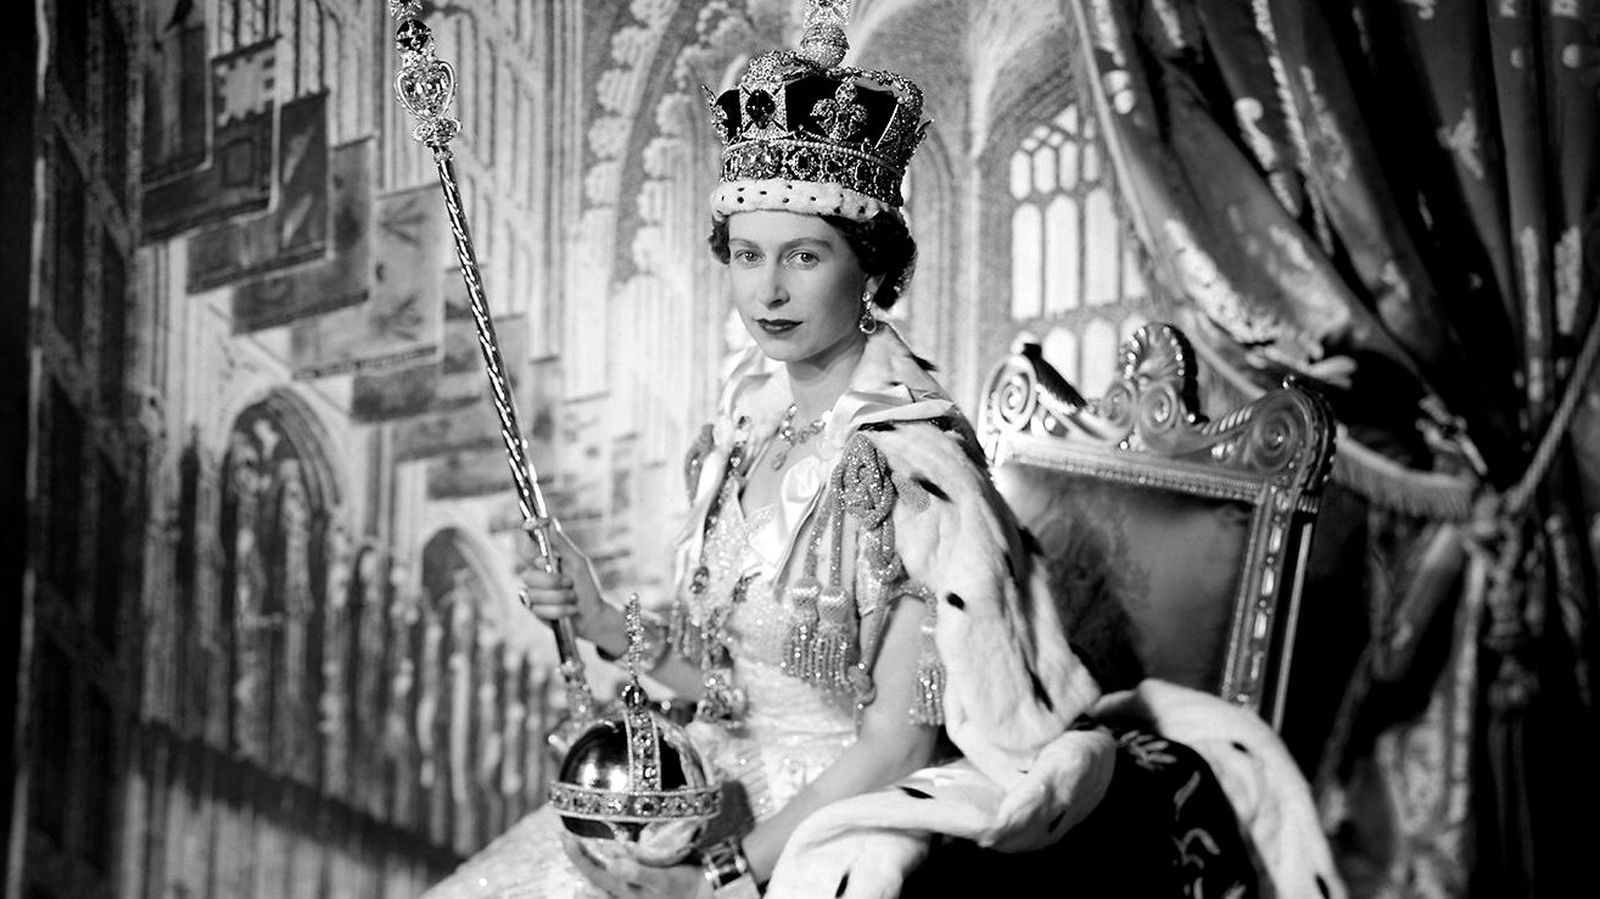 Коронация 74-летнего Карла III состоится спустя 70 лет с момента восхождения на трон 25-летней Елизаветы II